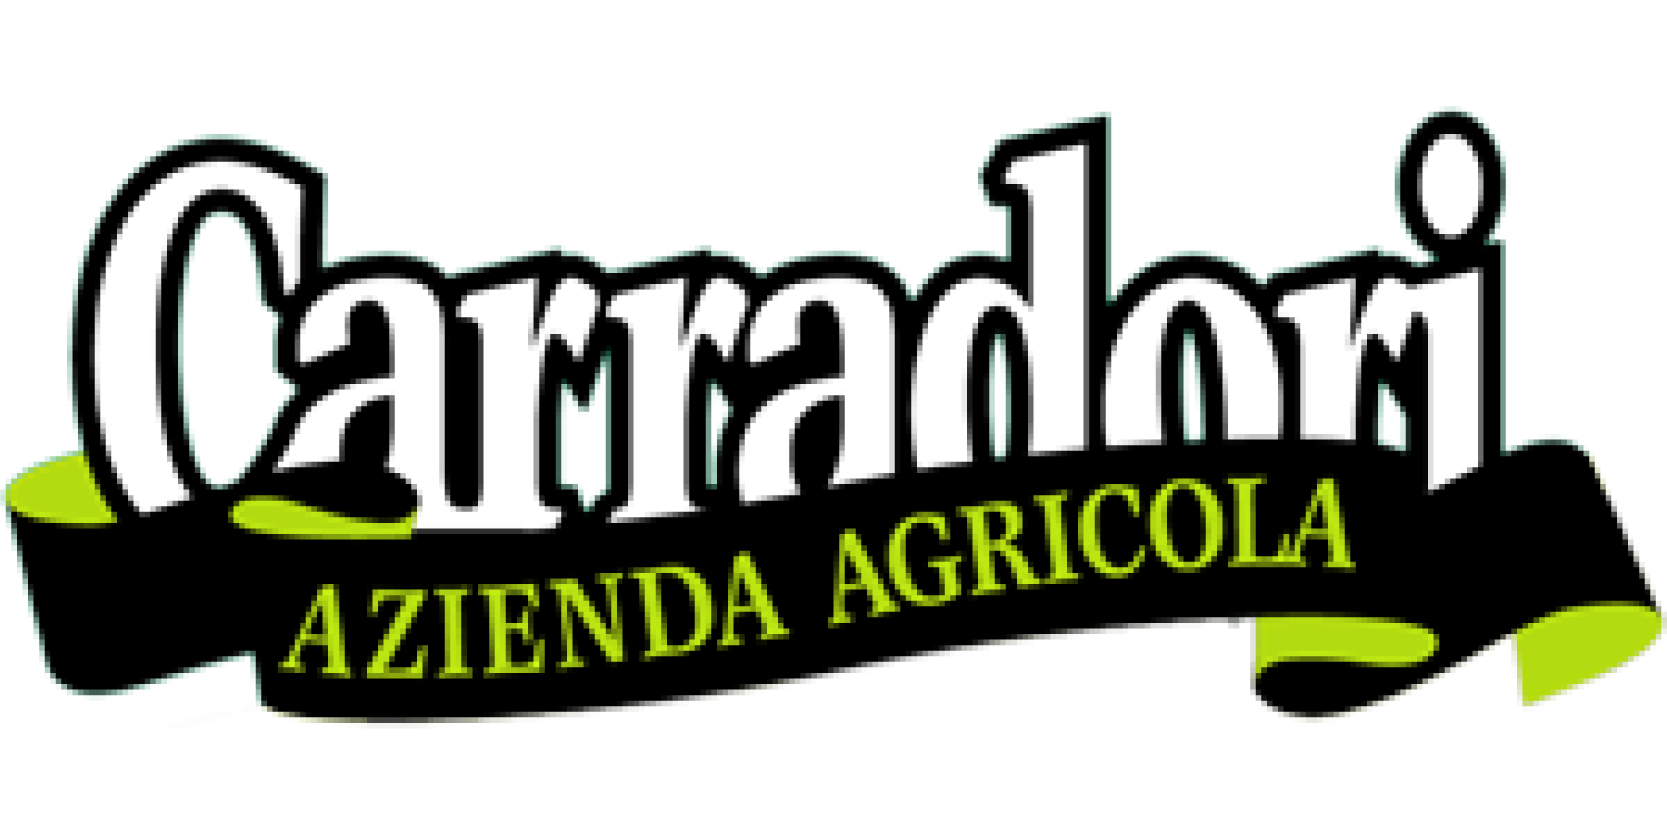 Carradori - Azienda Agricola